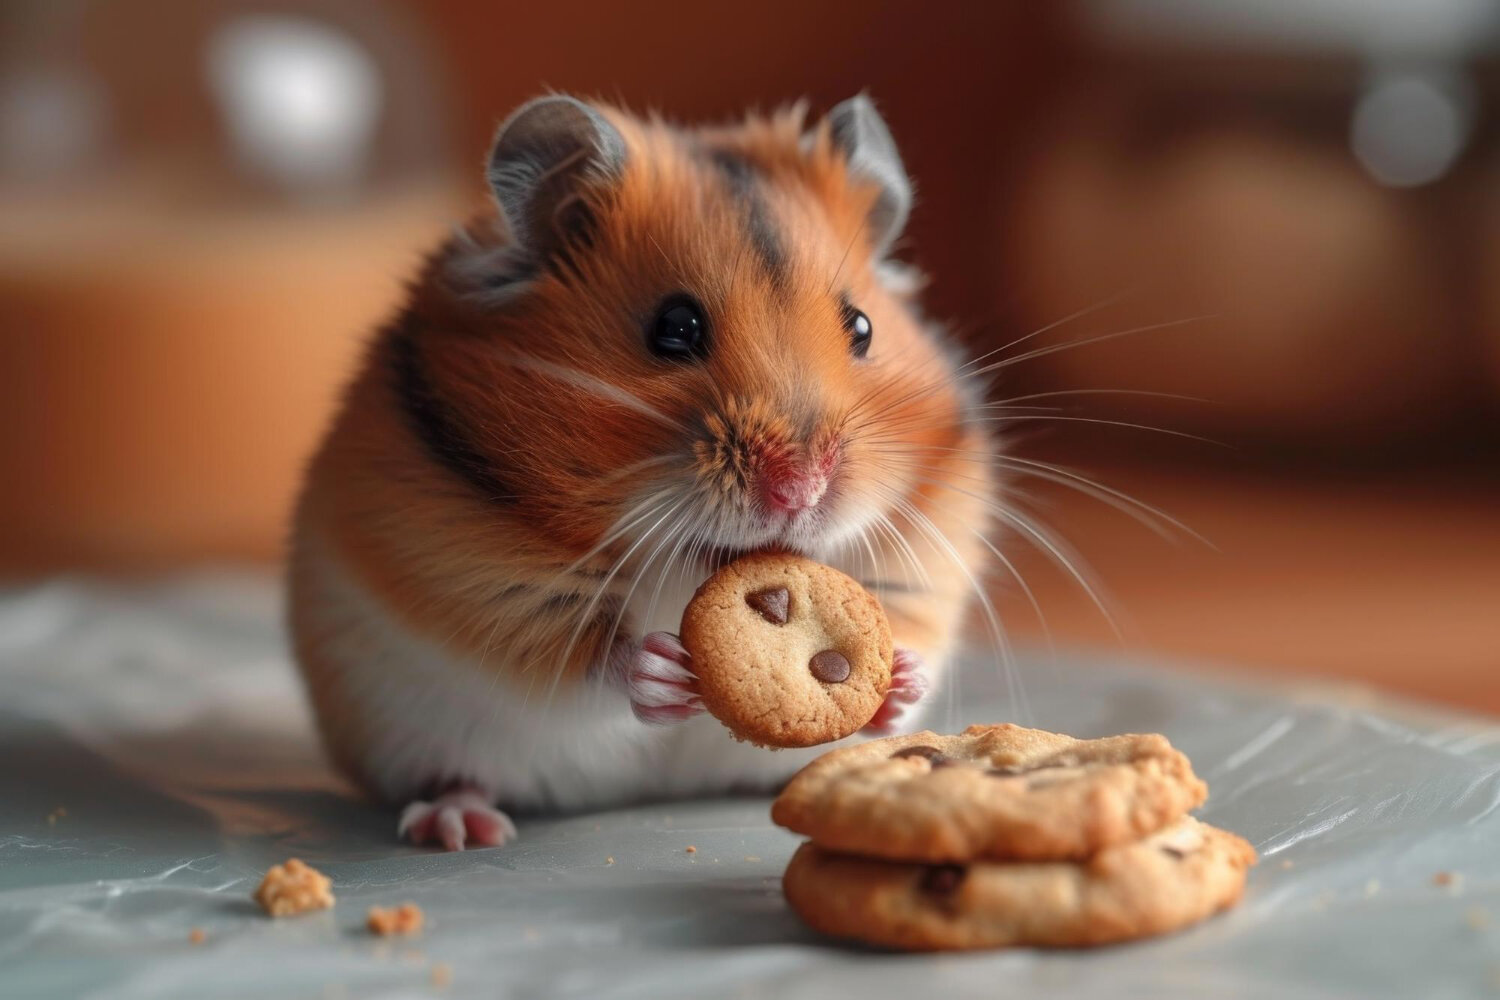 çikolatalı kurabiye yiyen hamster